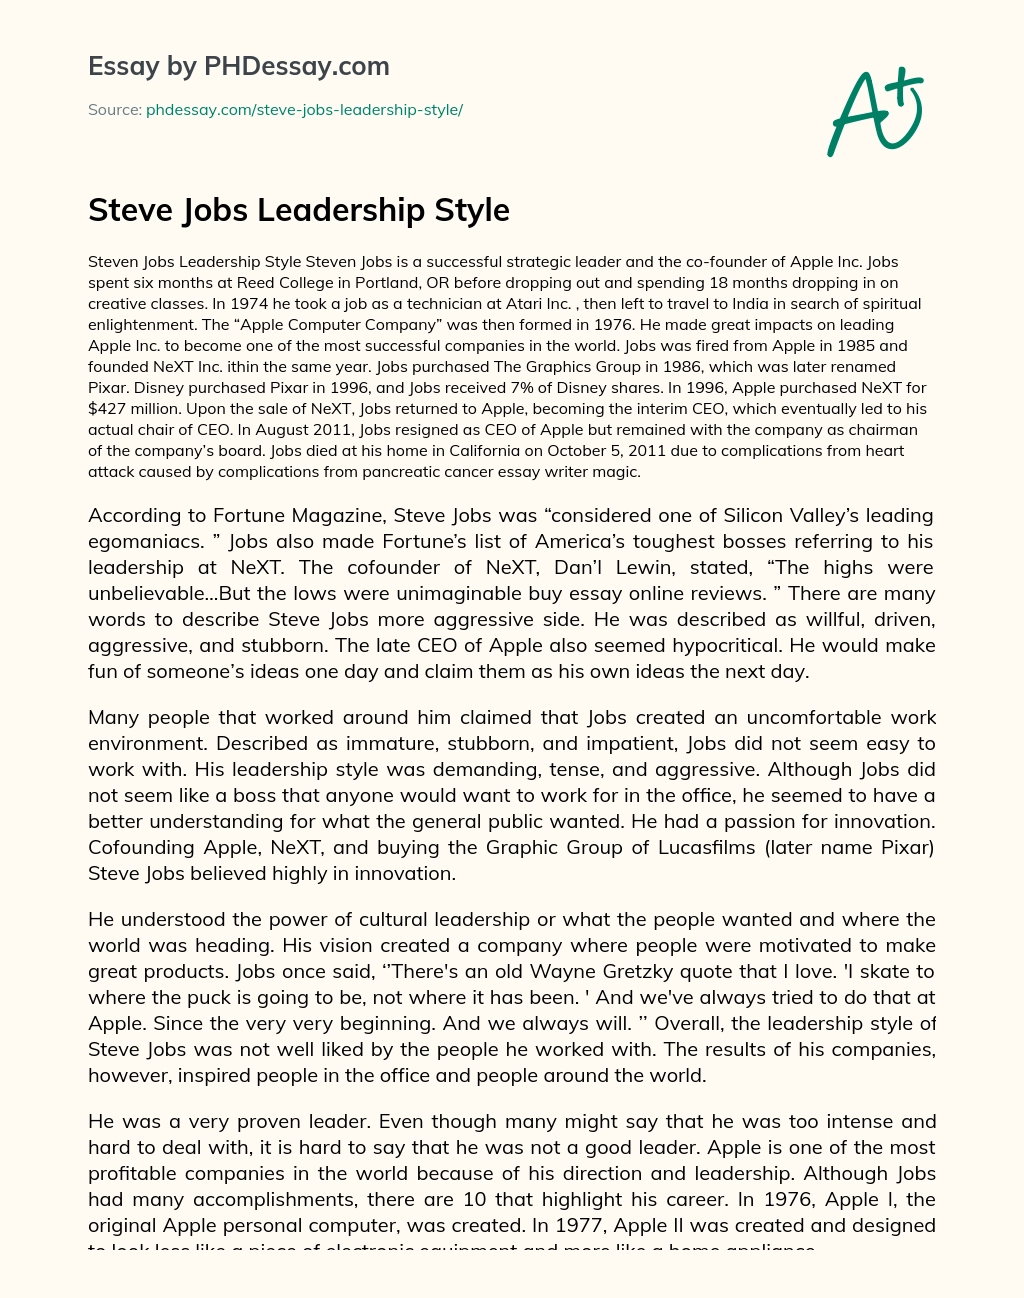 Steve Jobs Leadership Style essay